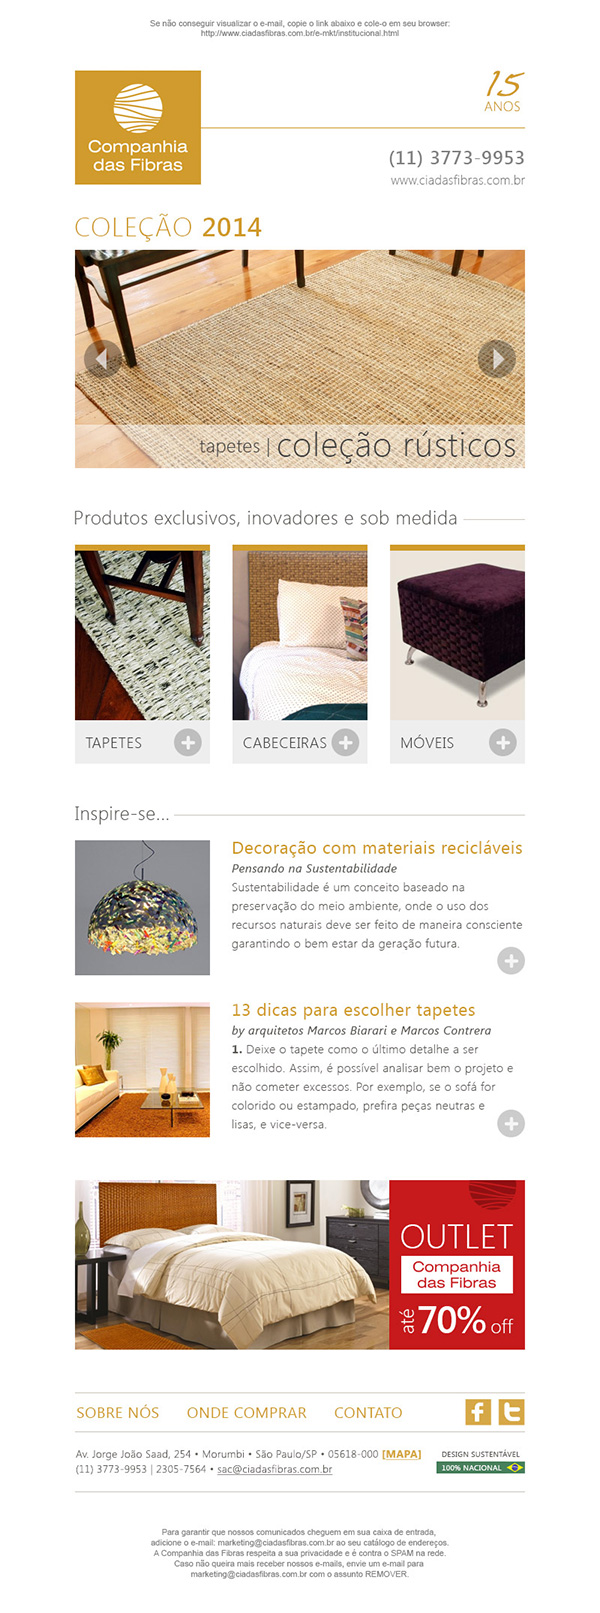 E-mail marketing/newsletter – Companhia das Fibras | Web Design